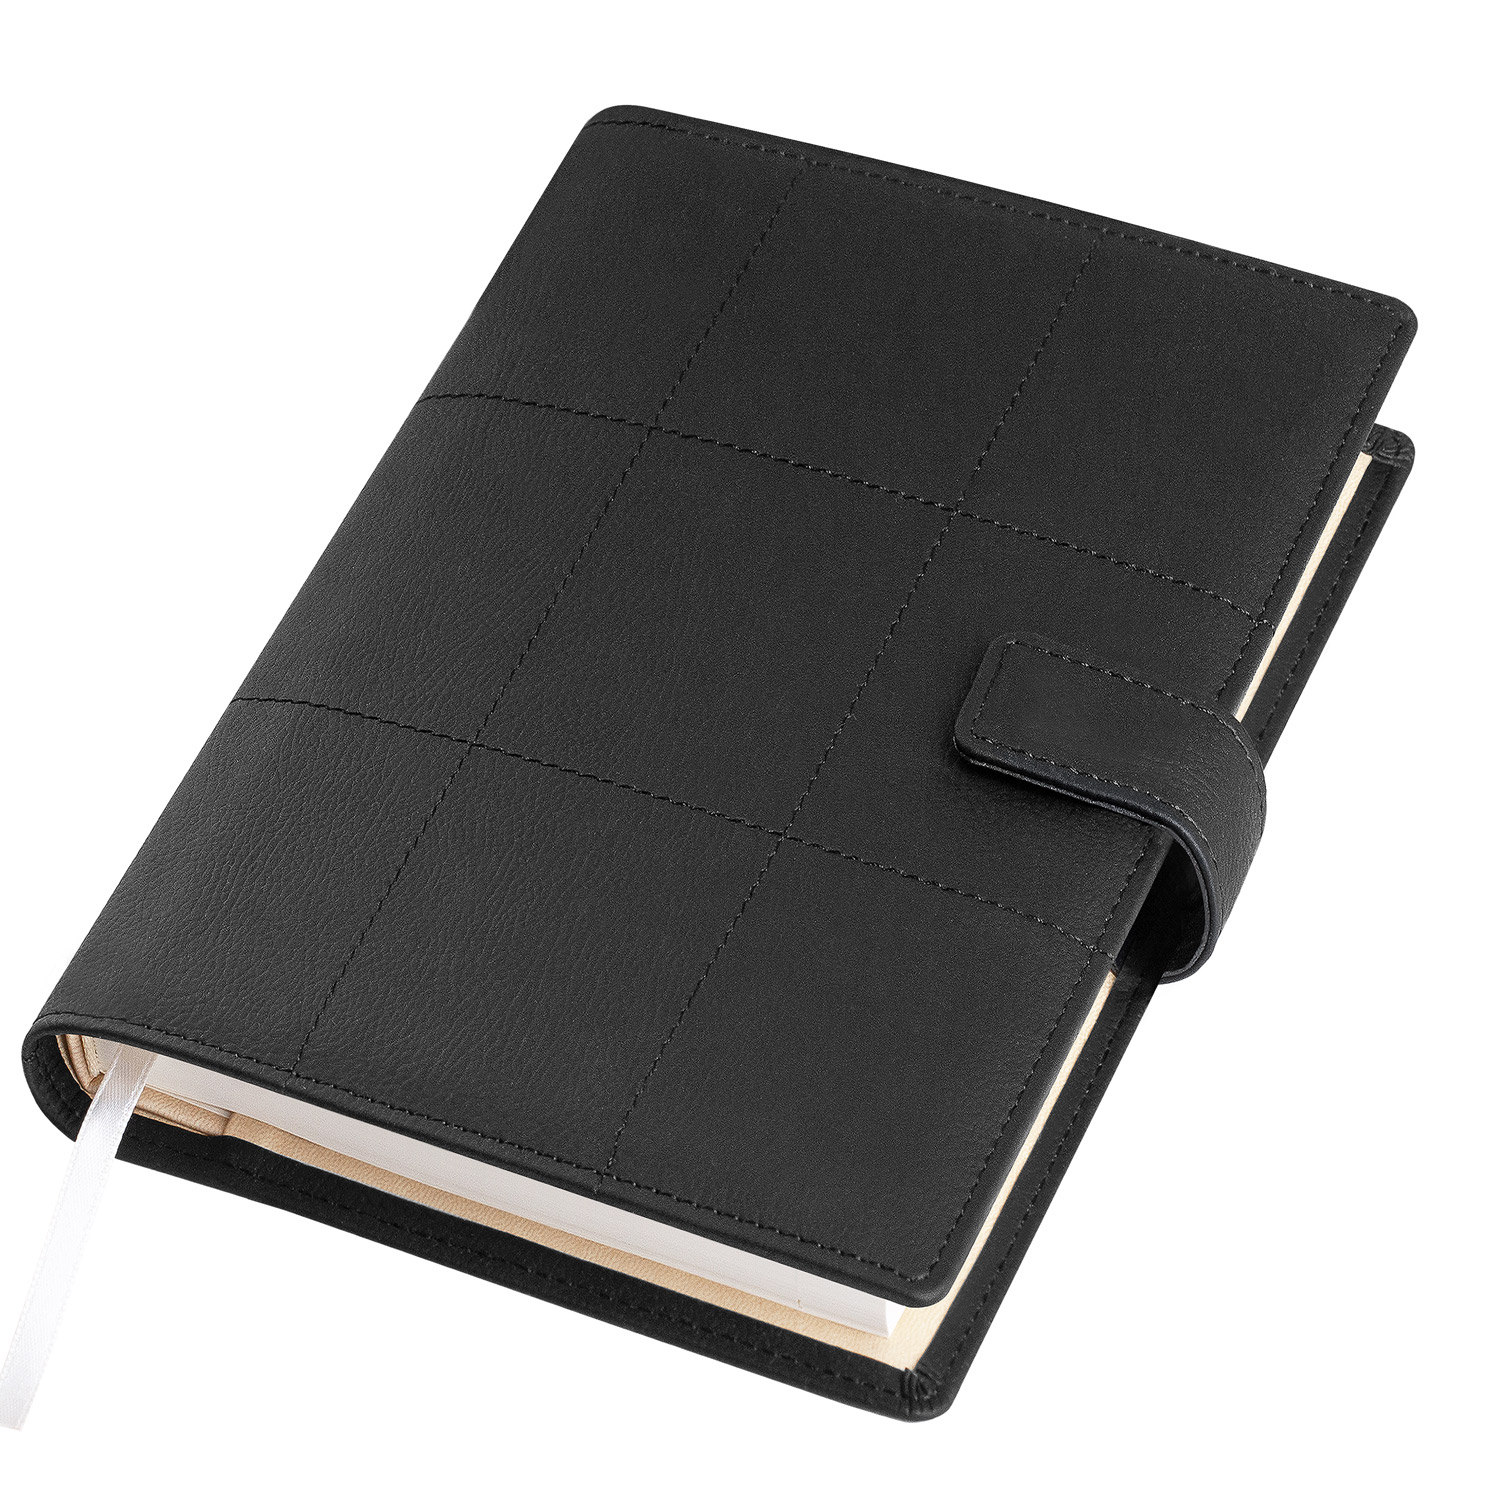 Ежедневник-портфолио Royal, черный, обложка soft touch, недатированный кремовый блок, подарочная коробка